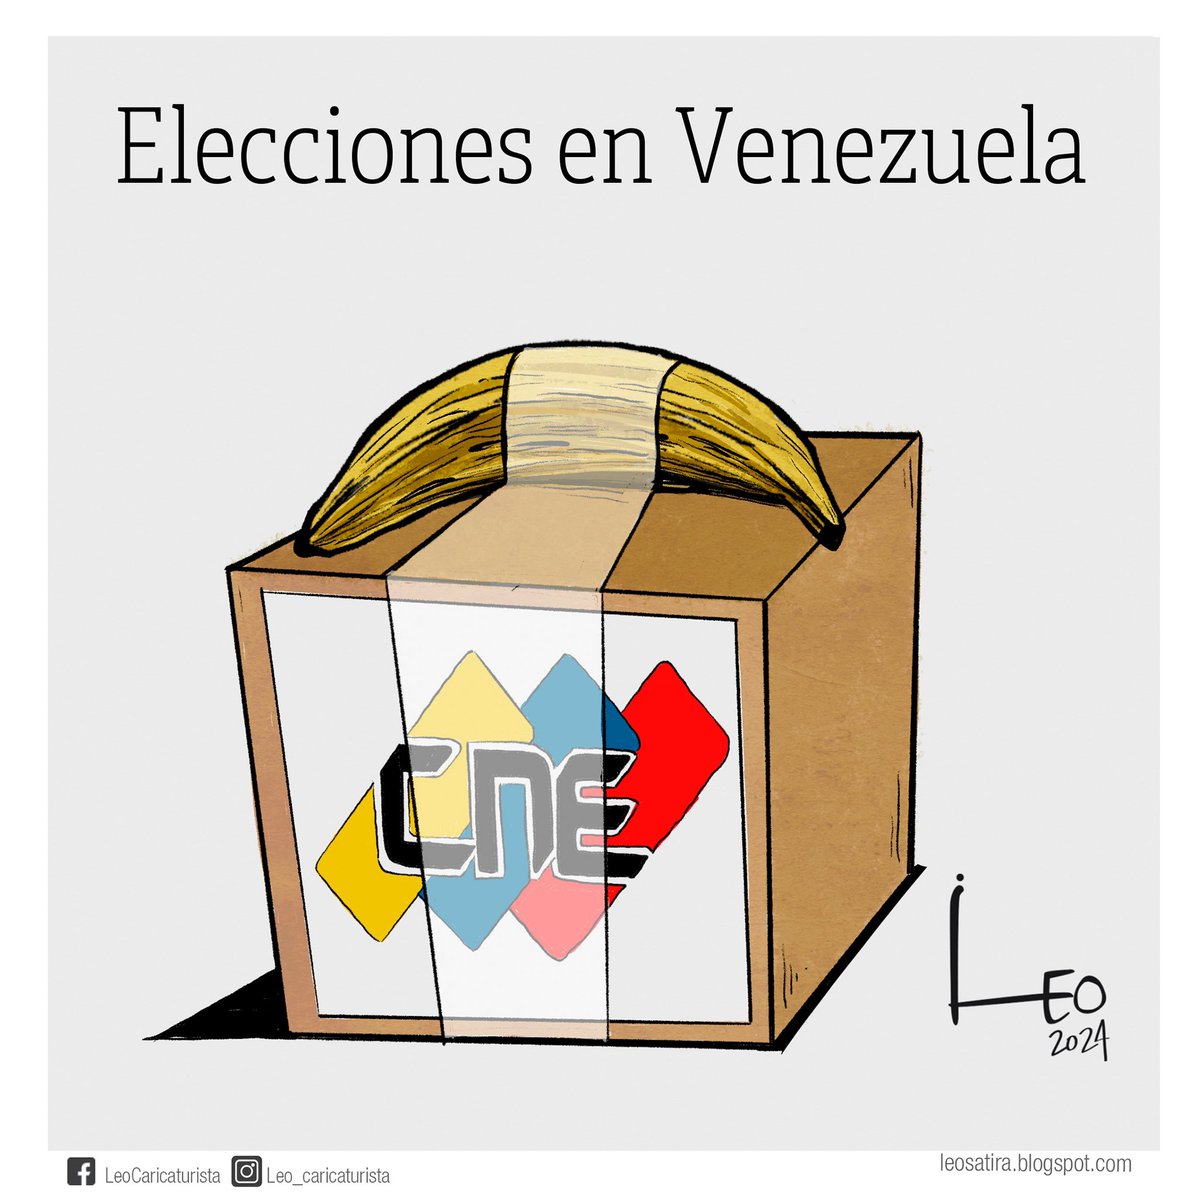 Elecciones en Venezuela 

#Maduro #Oposición #Elecciones #Democracia #CNE #LeoSátira #CaricaturaDeOpinión #CaricaturaPolítica